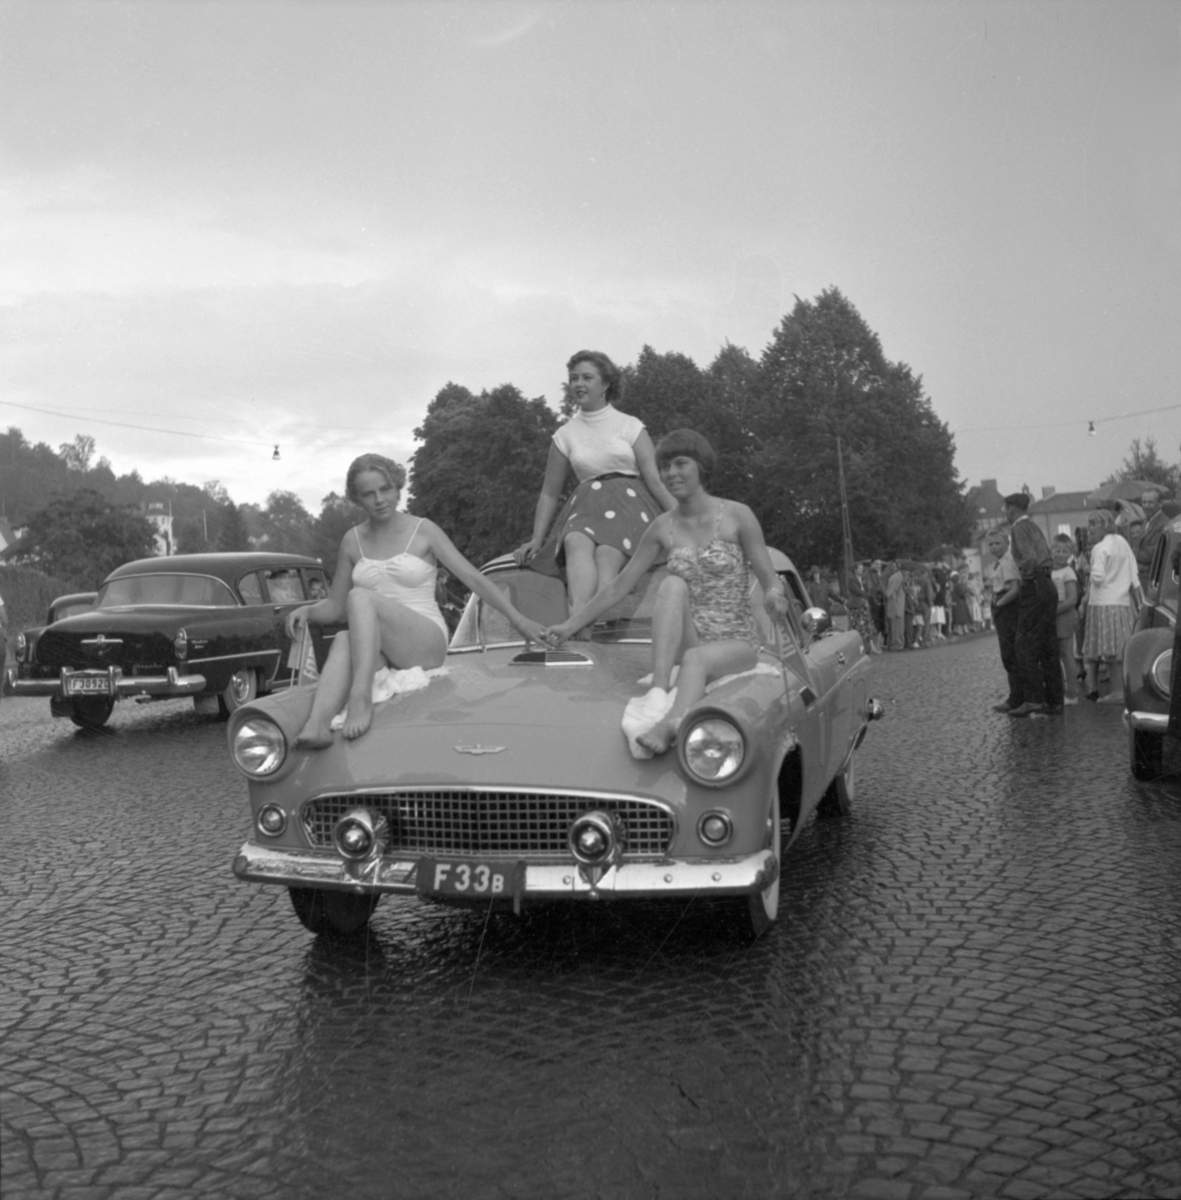 Stampaplan i Huskvarna, 1950-talet. Tre vackra flickor pryder denna Ford Thunderbird vid en bilkortege genom Huskvarna, troligen i samband med Stora Träffen.